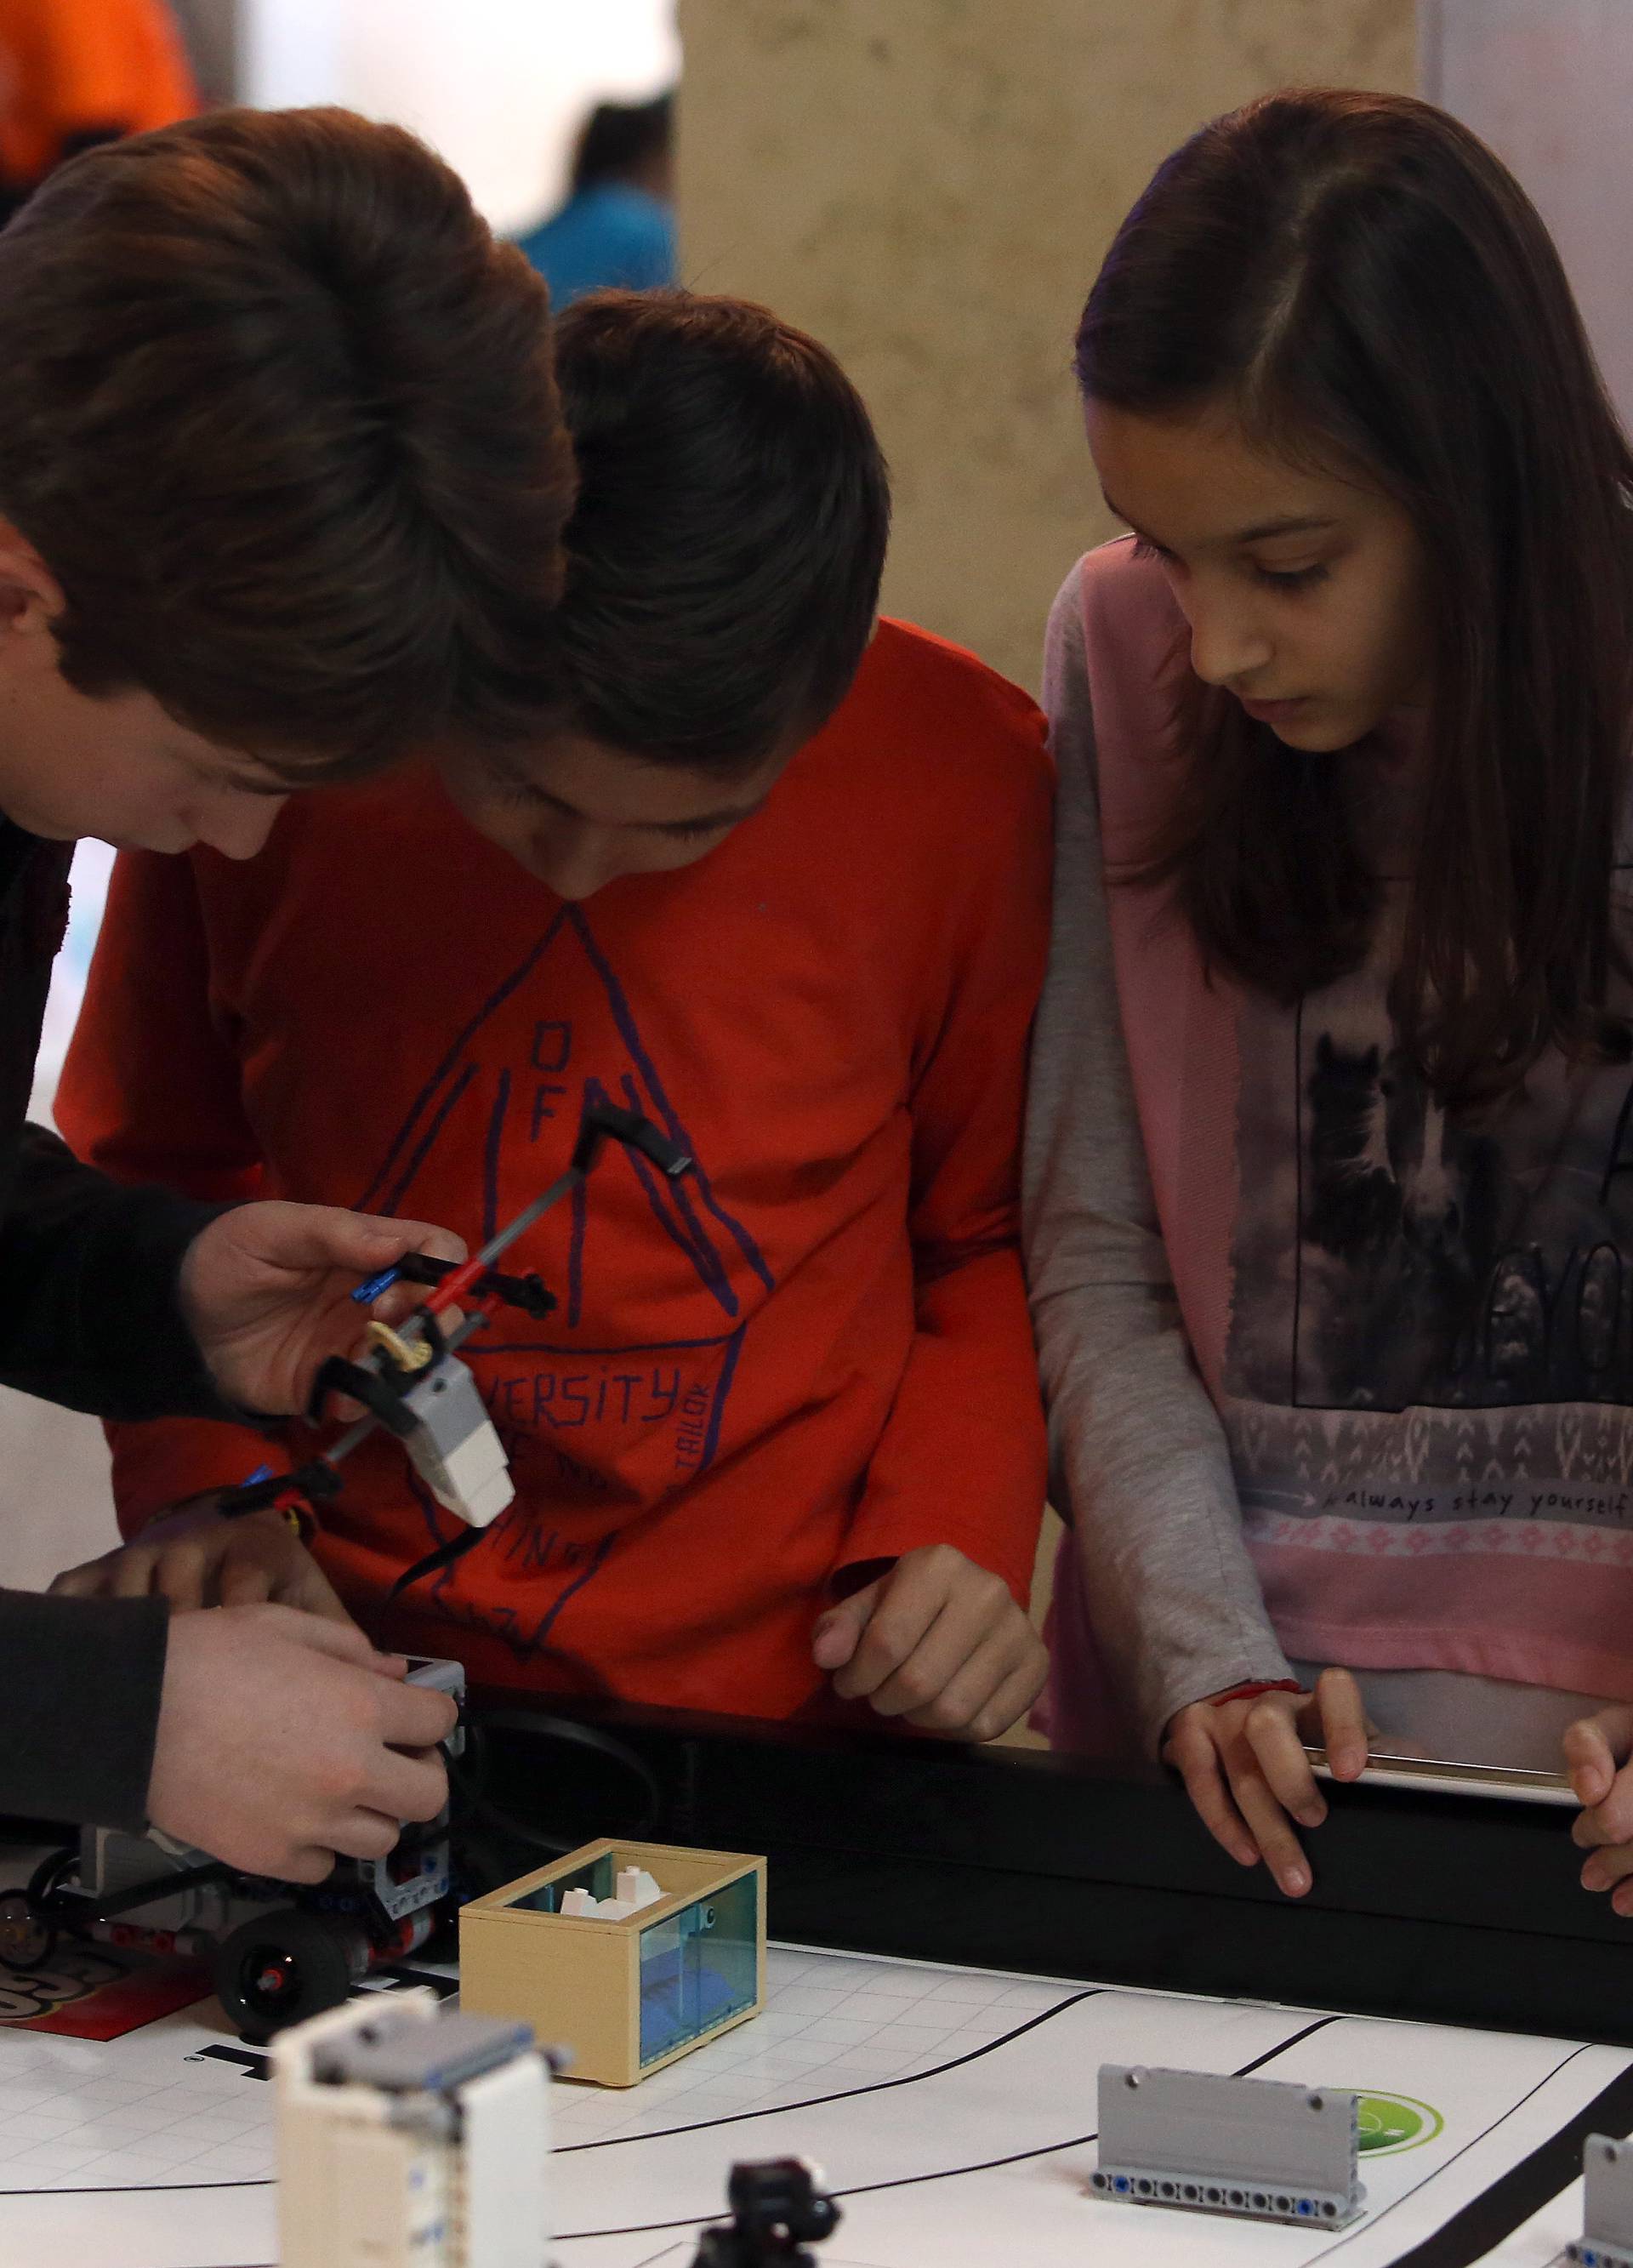 Sraz robota: Natjecanje Lego robota koji pomažu životinjama